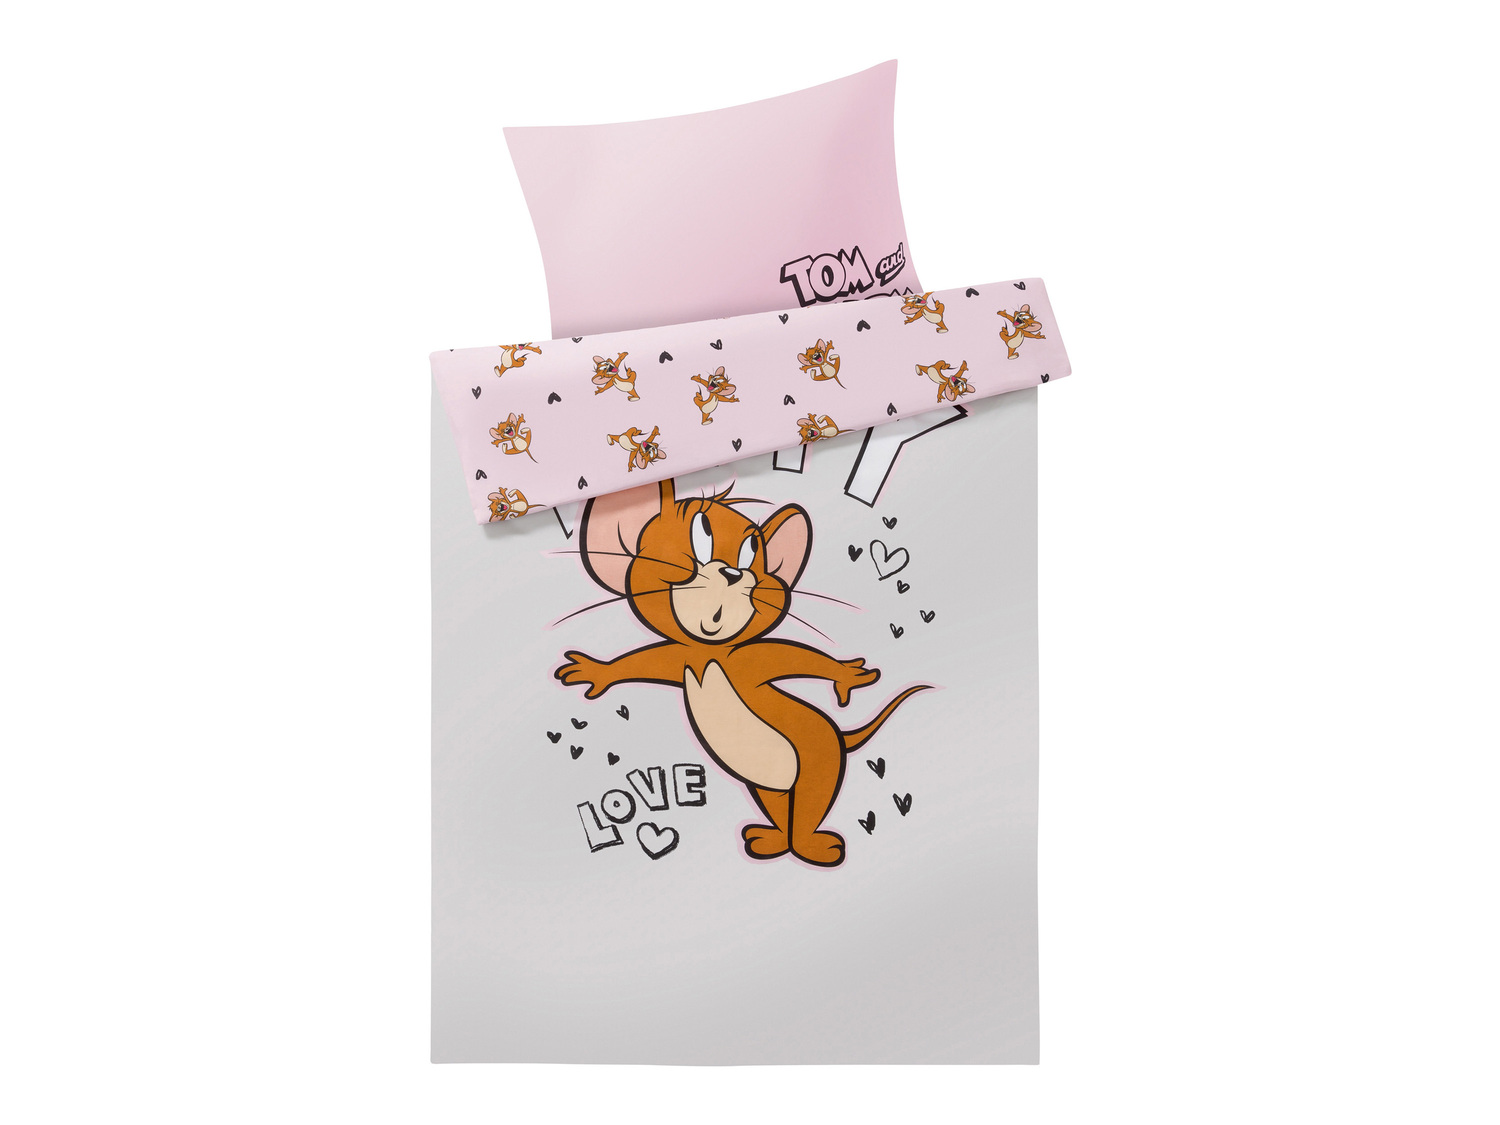 Parure copripiumino singolo Tom and Jerry , prezzo 12.99 € 
- 50 x 80 cm, 155 ...